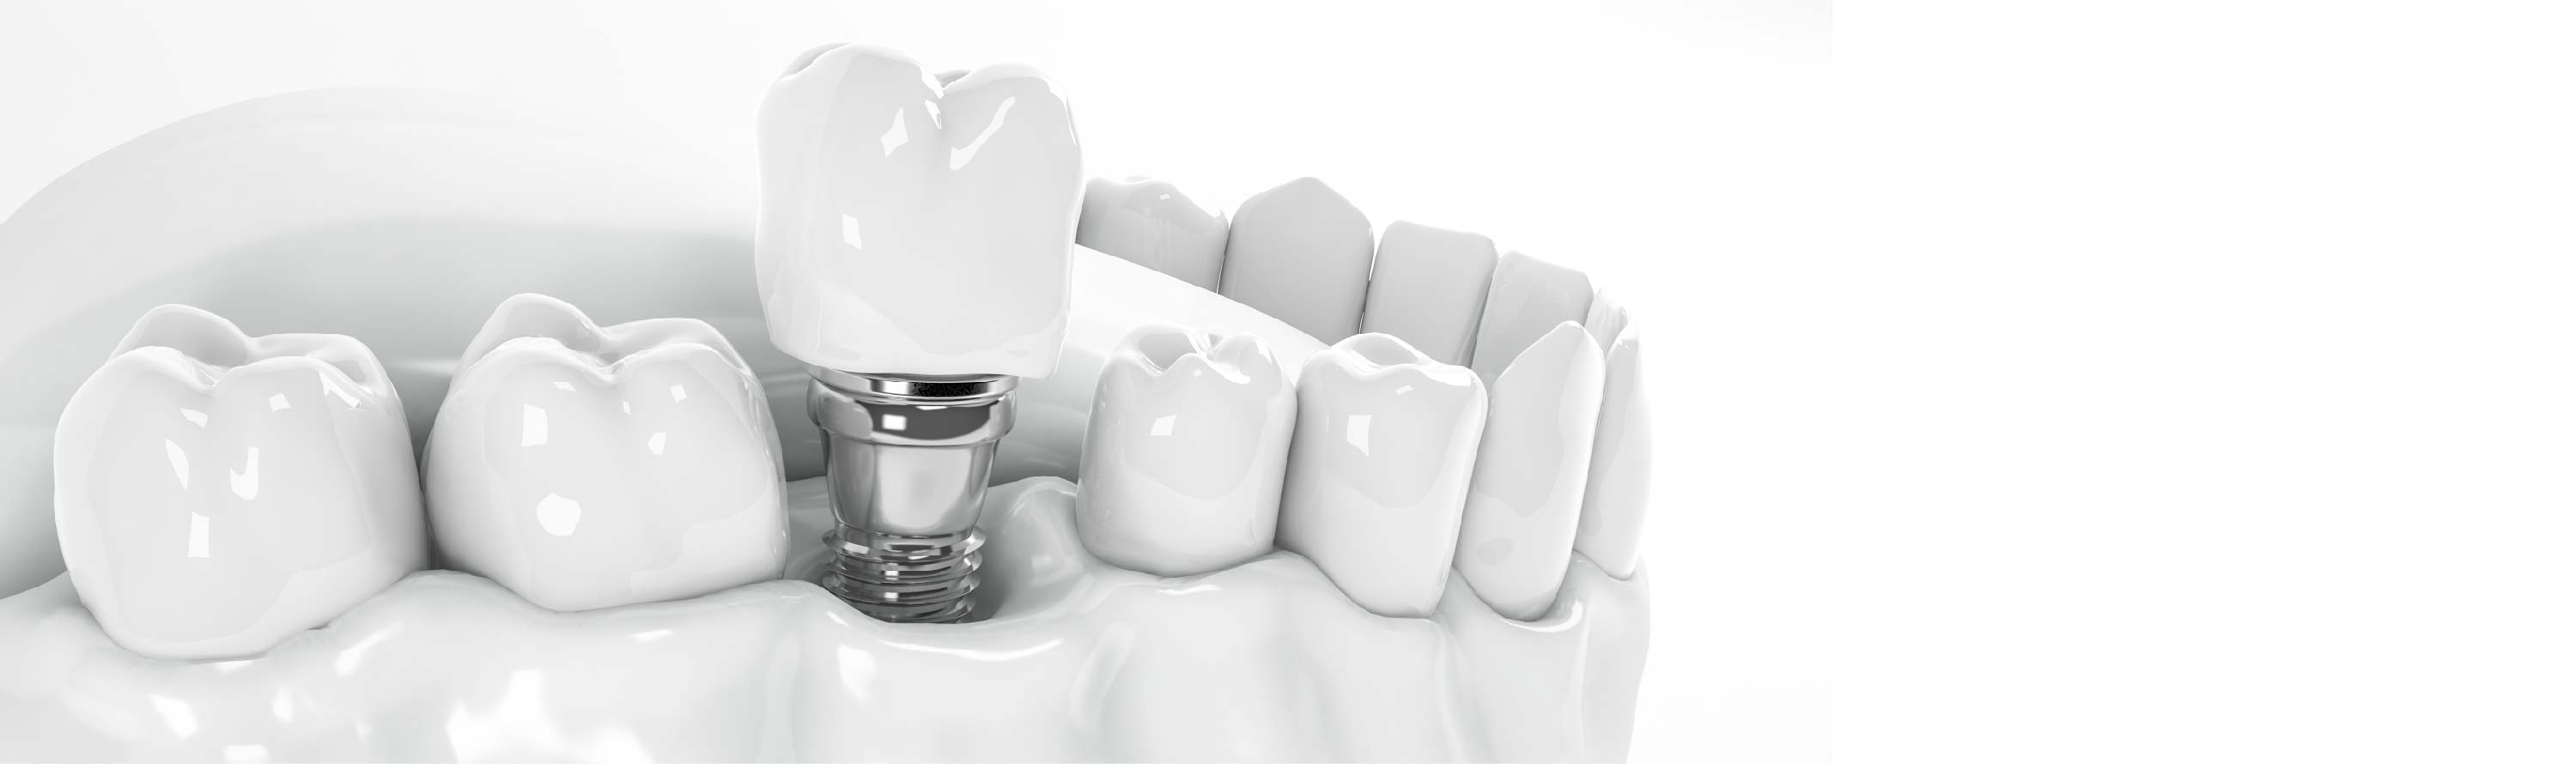 Diş implantı tedavi süreci